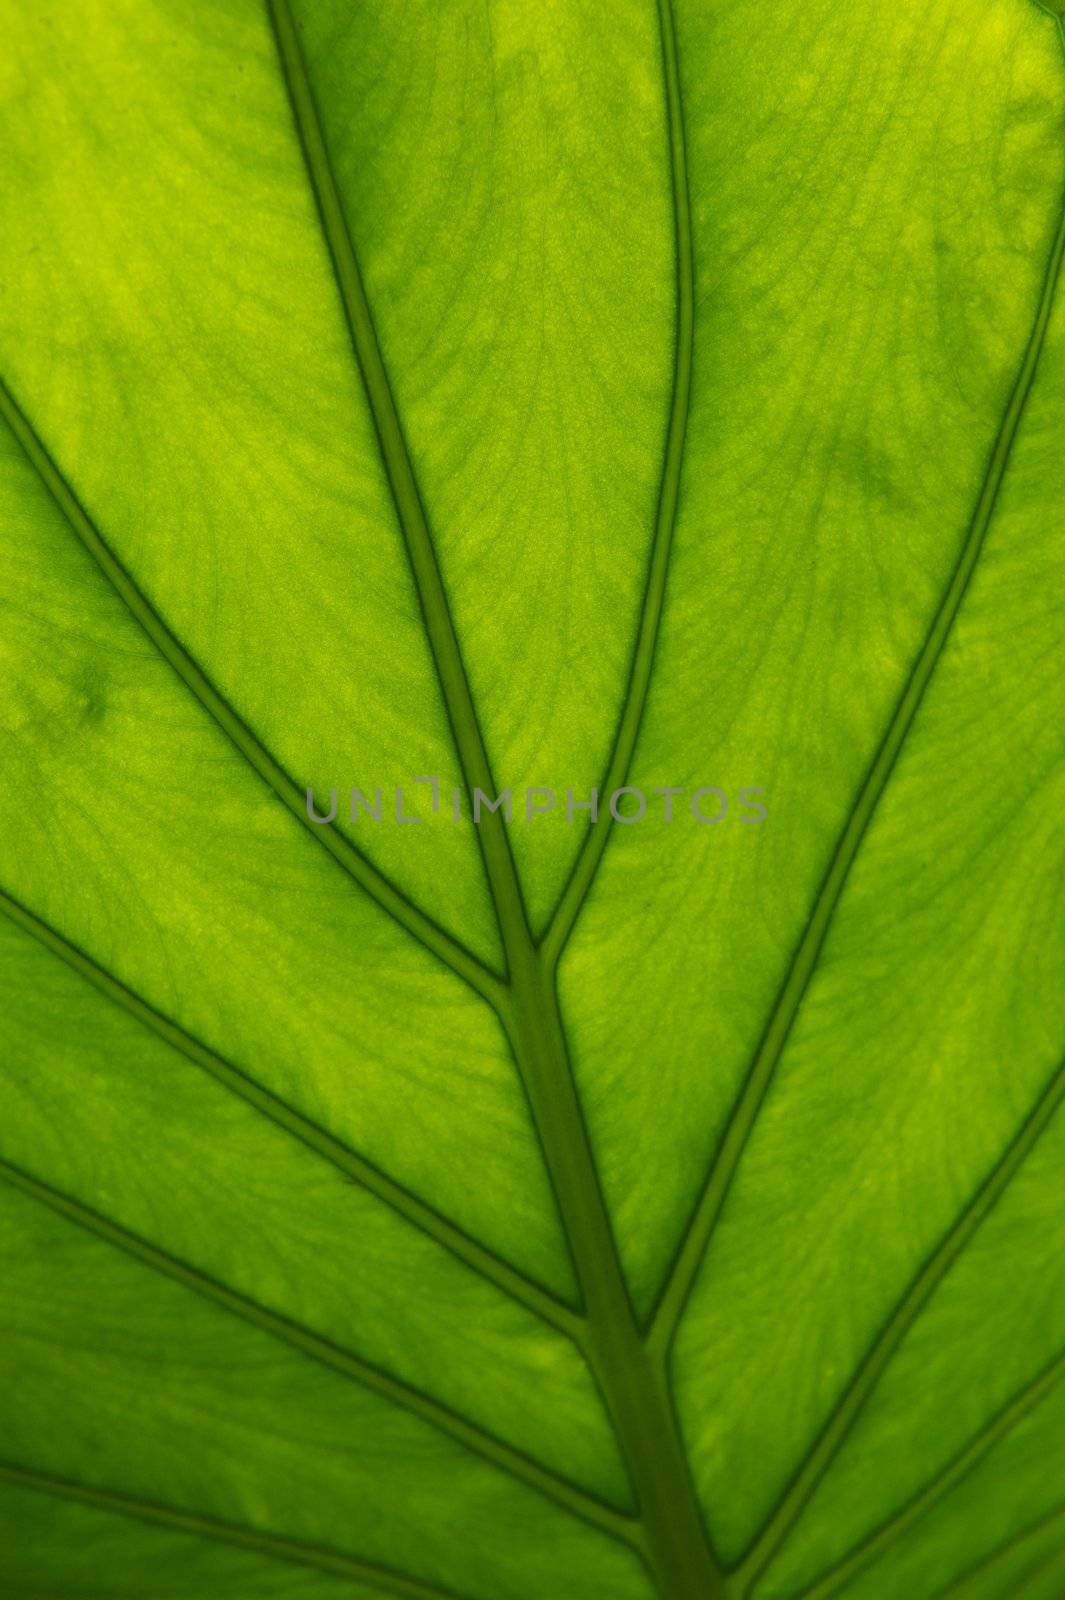 Backlit Green Leaf by pixelsnap